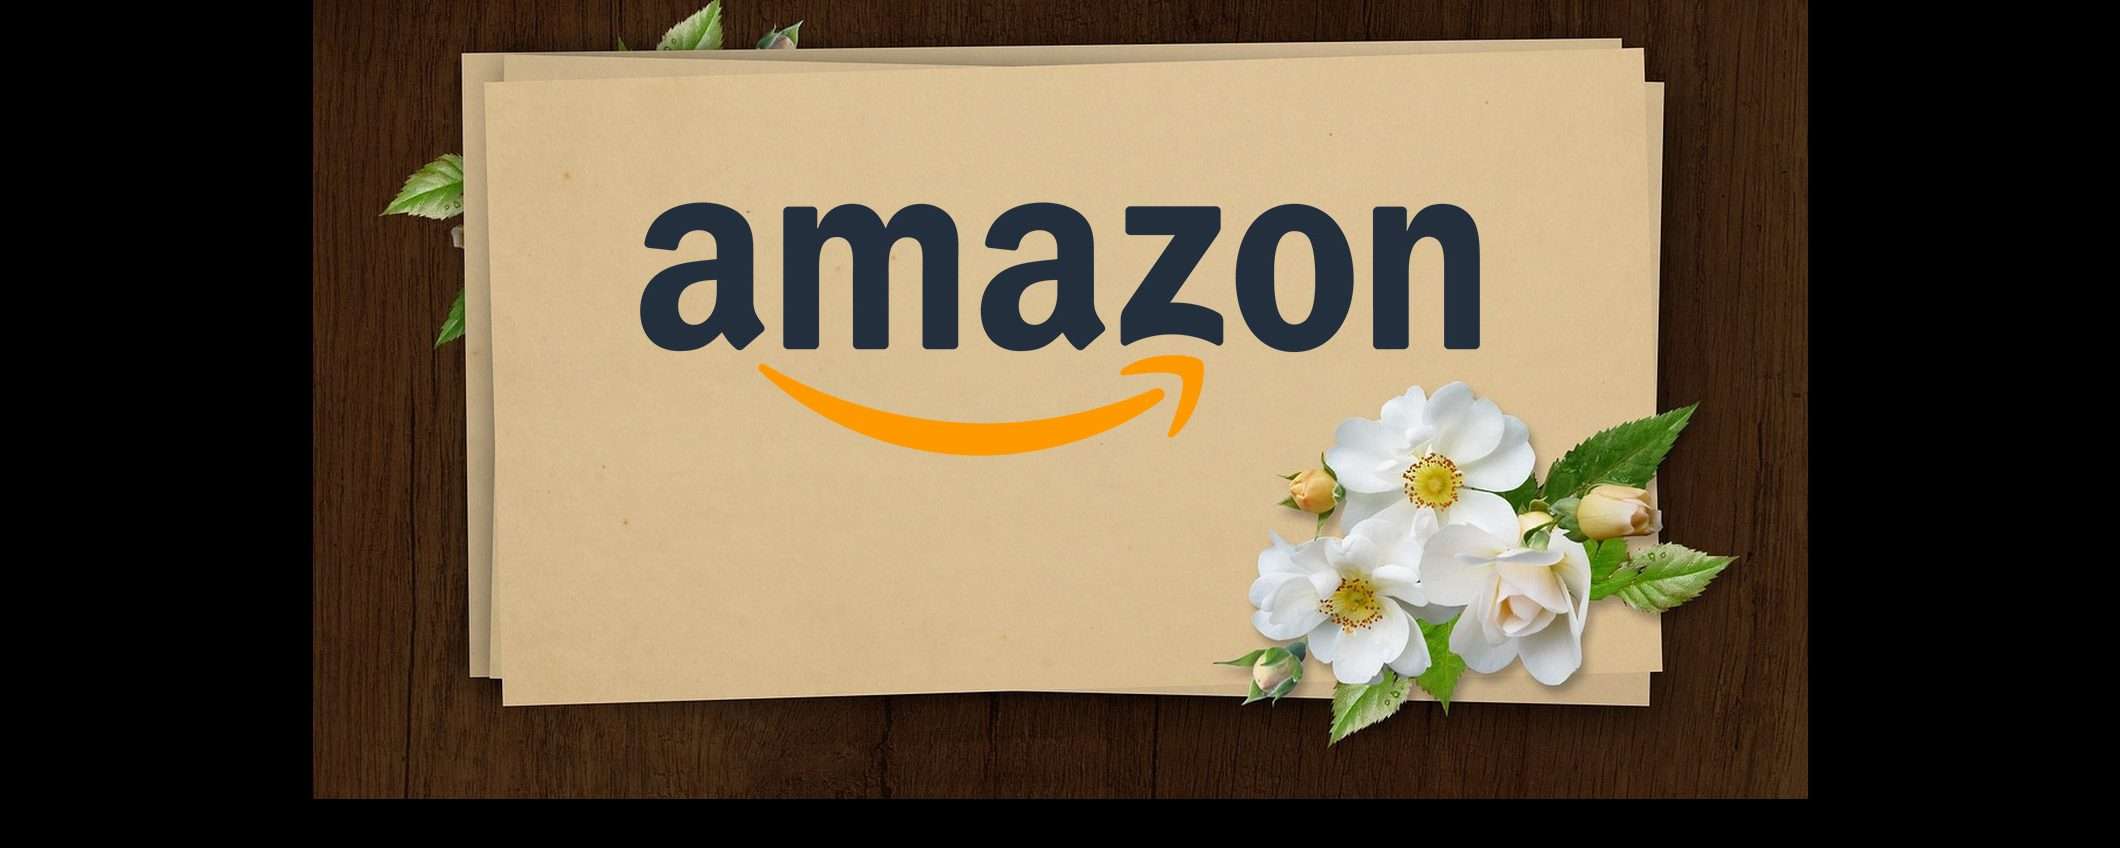 Amazon conferma acquisto gift card, ma è un errore